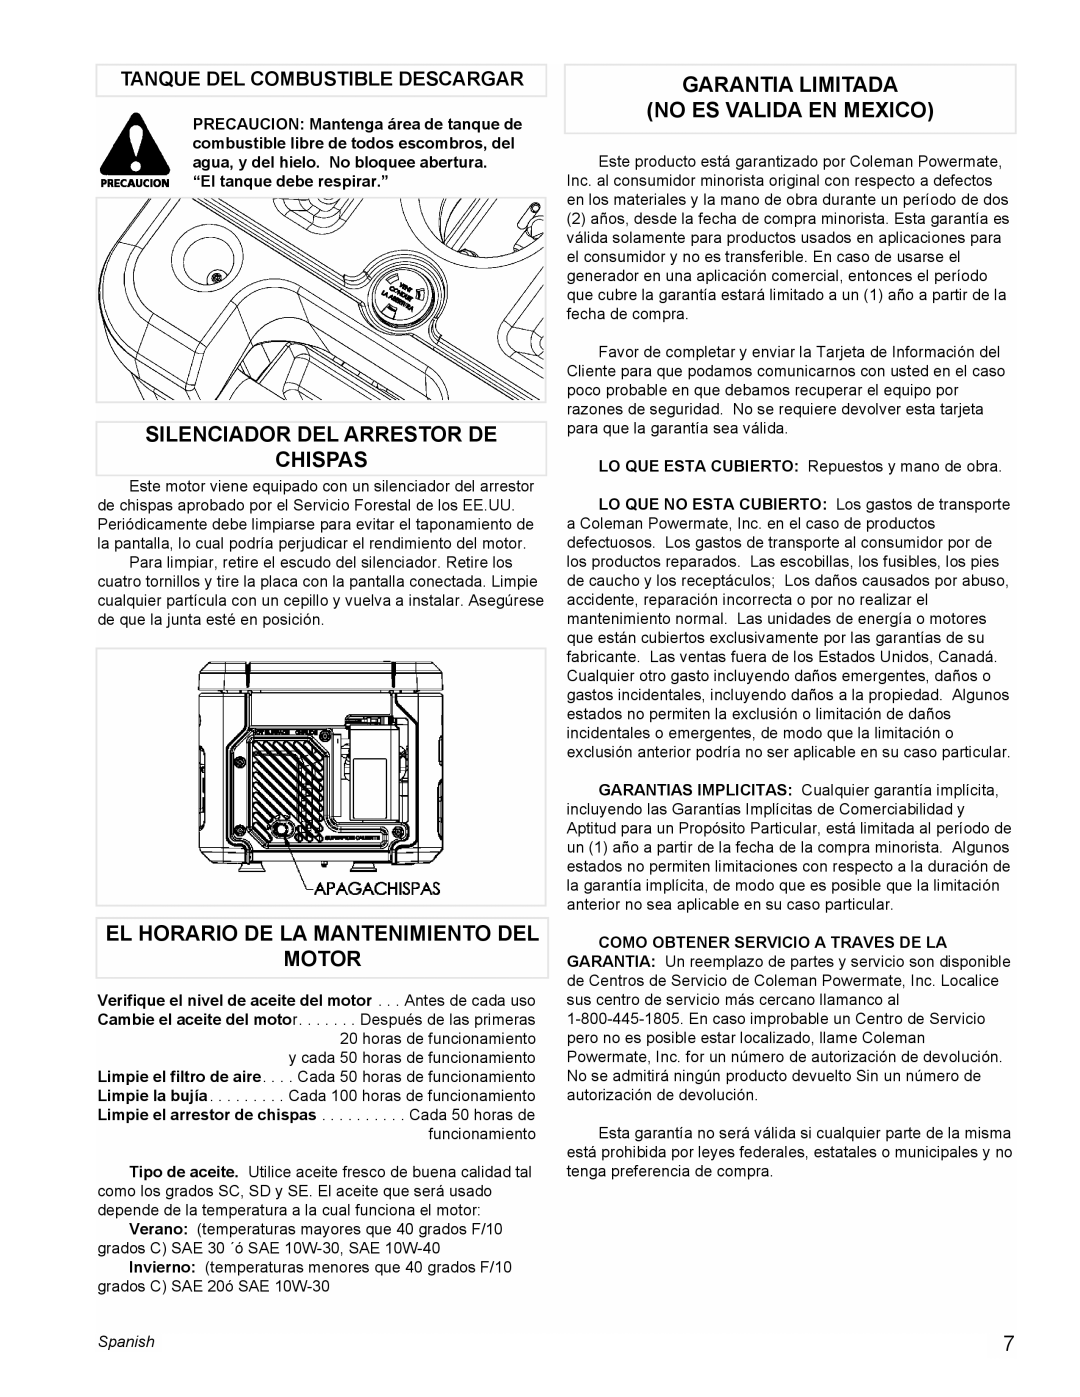 Powermate PE0401853 manual Silenciador Del Arrestor De Chispas, El Horario De La Mantenimiento Del Motor, Spanish 